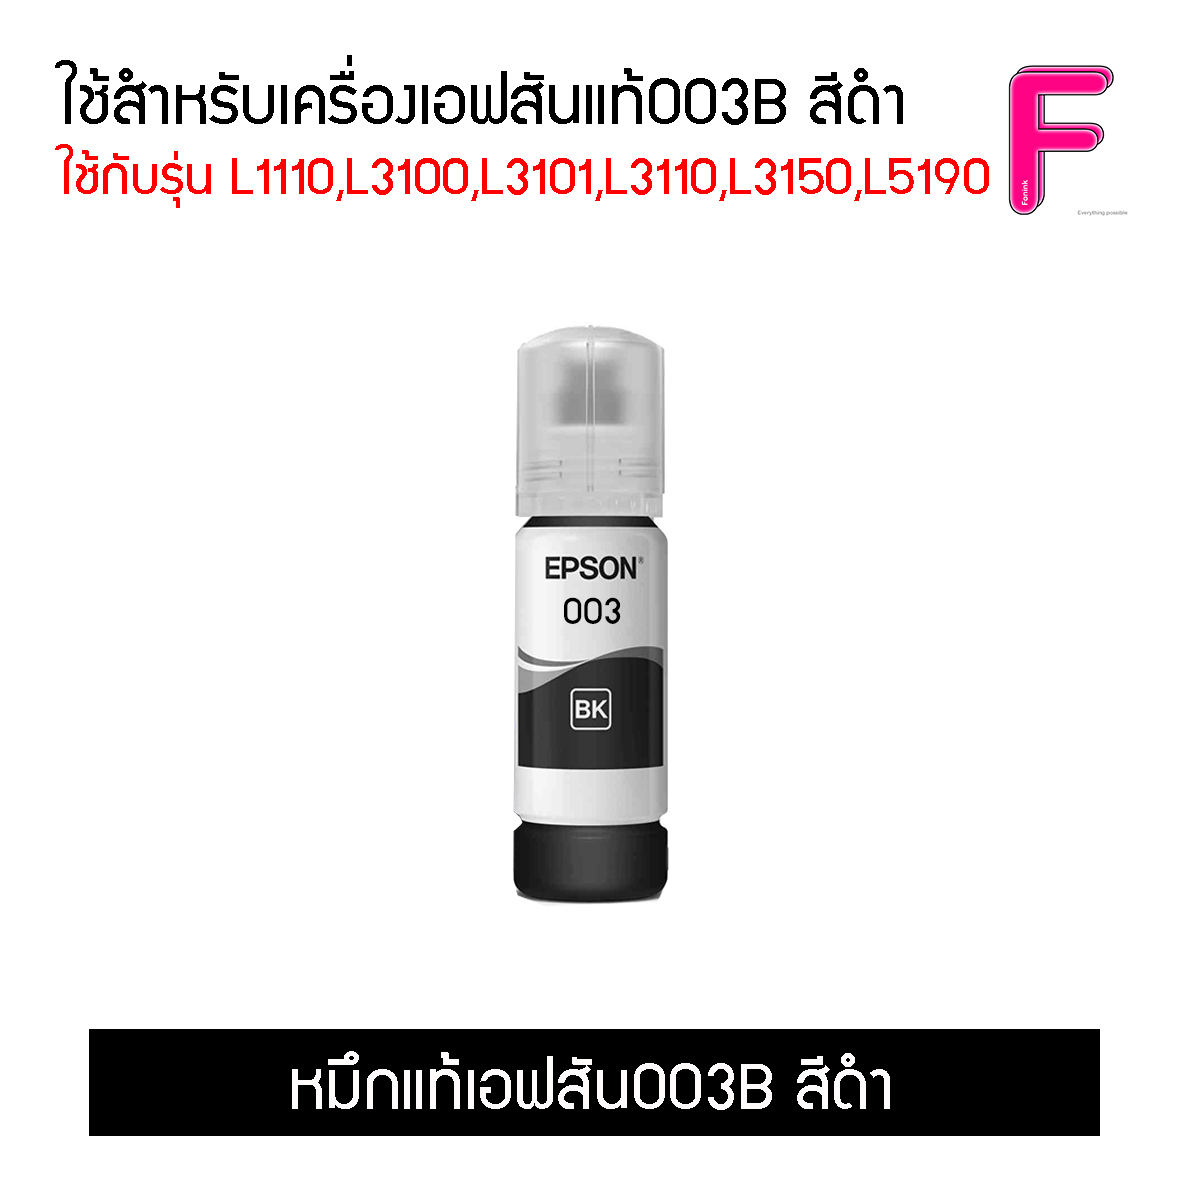 น้ำหมึกEpson 003 แยกสี  (No box)